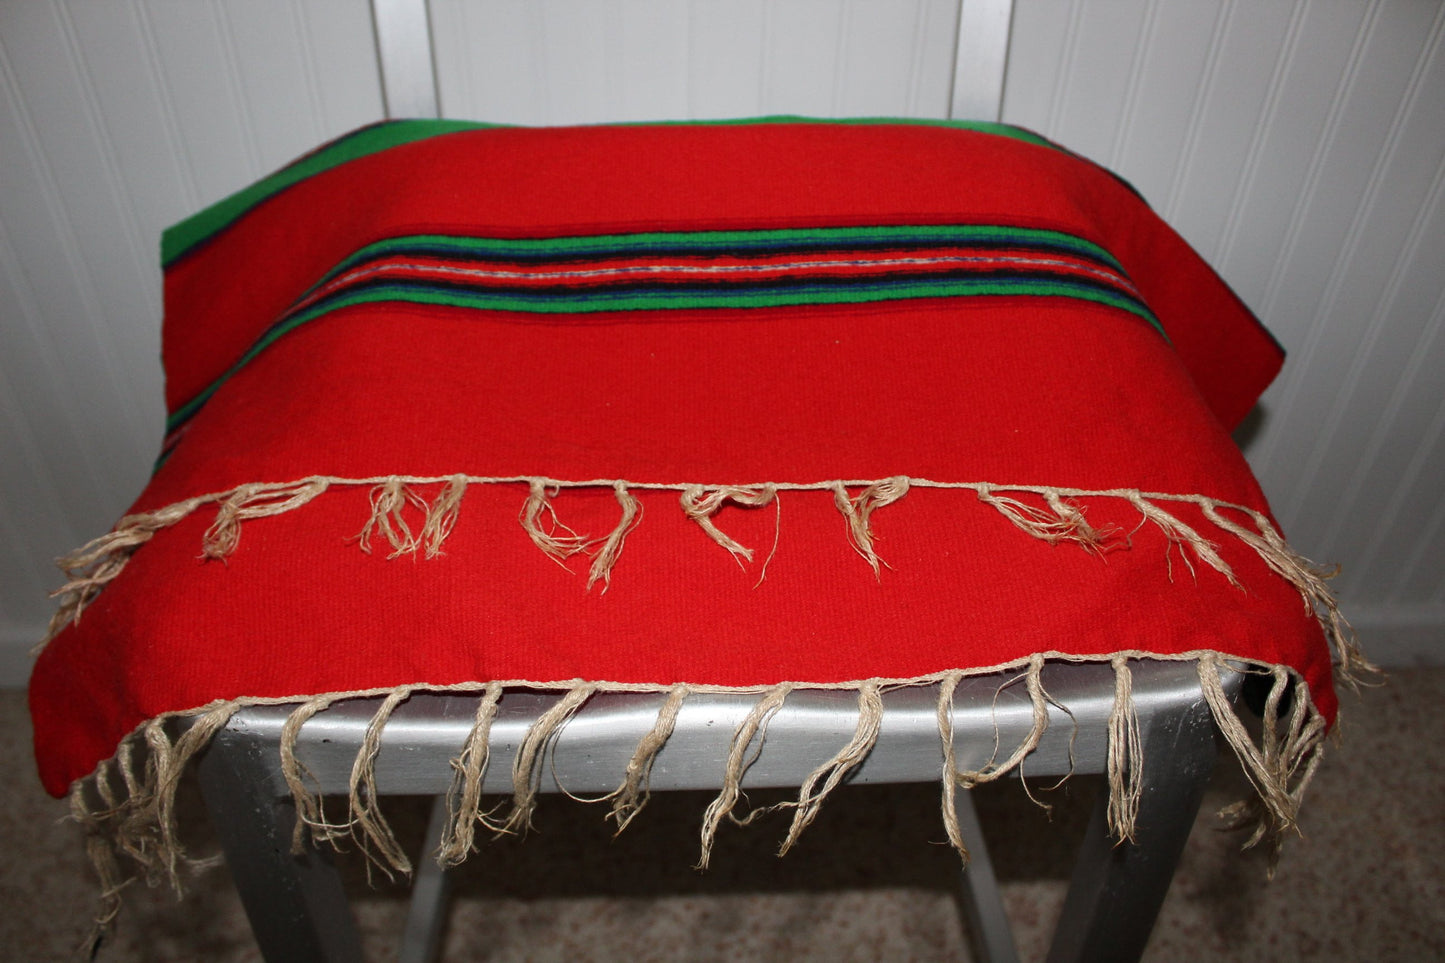 Estate Ukraine Woven Wool Runner 26" X 80" Red Royal Blue Green stripe